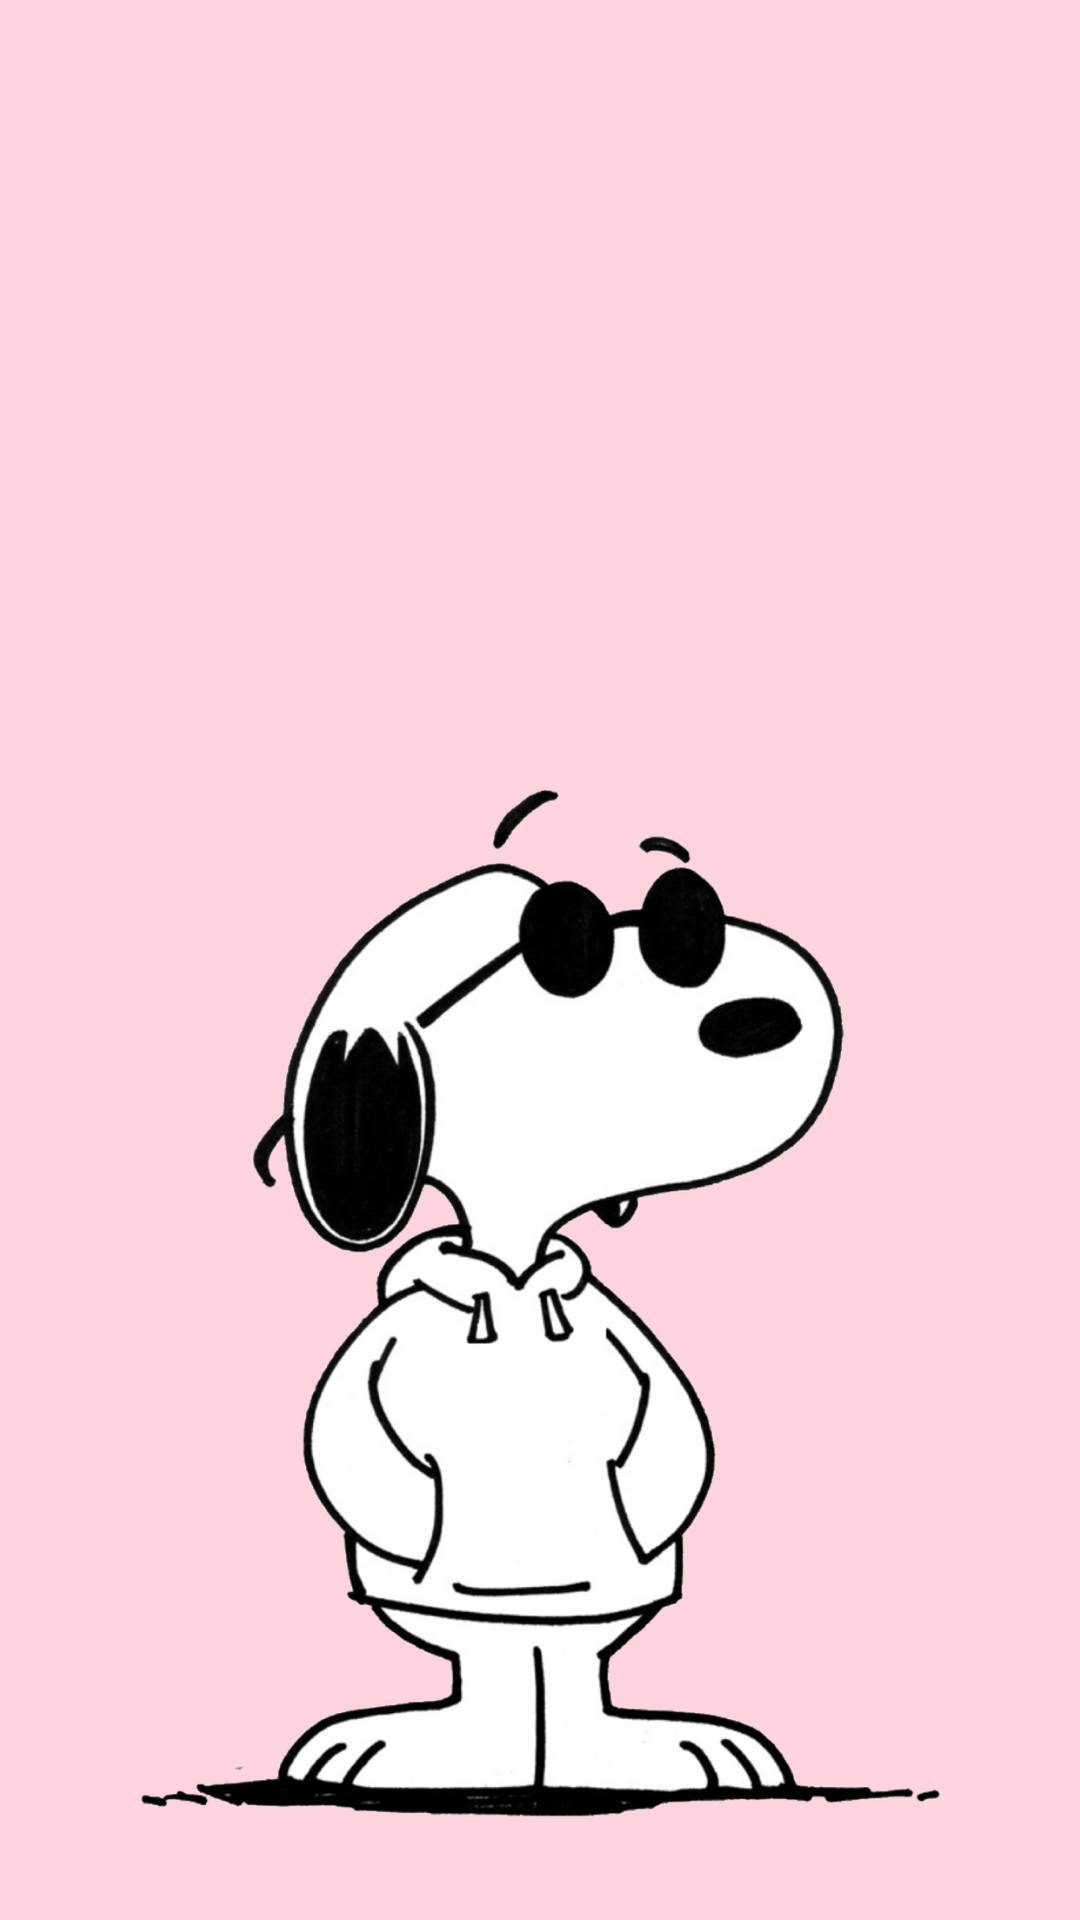 Savage Look Snoopy Cartoon IPhone Wallpaper